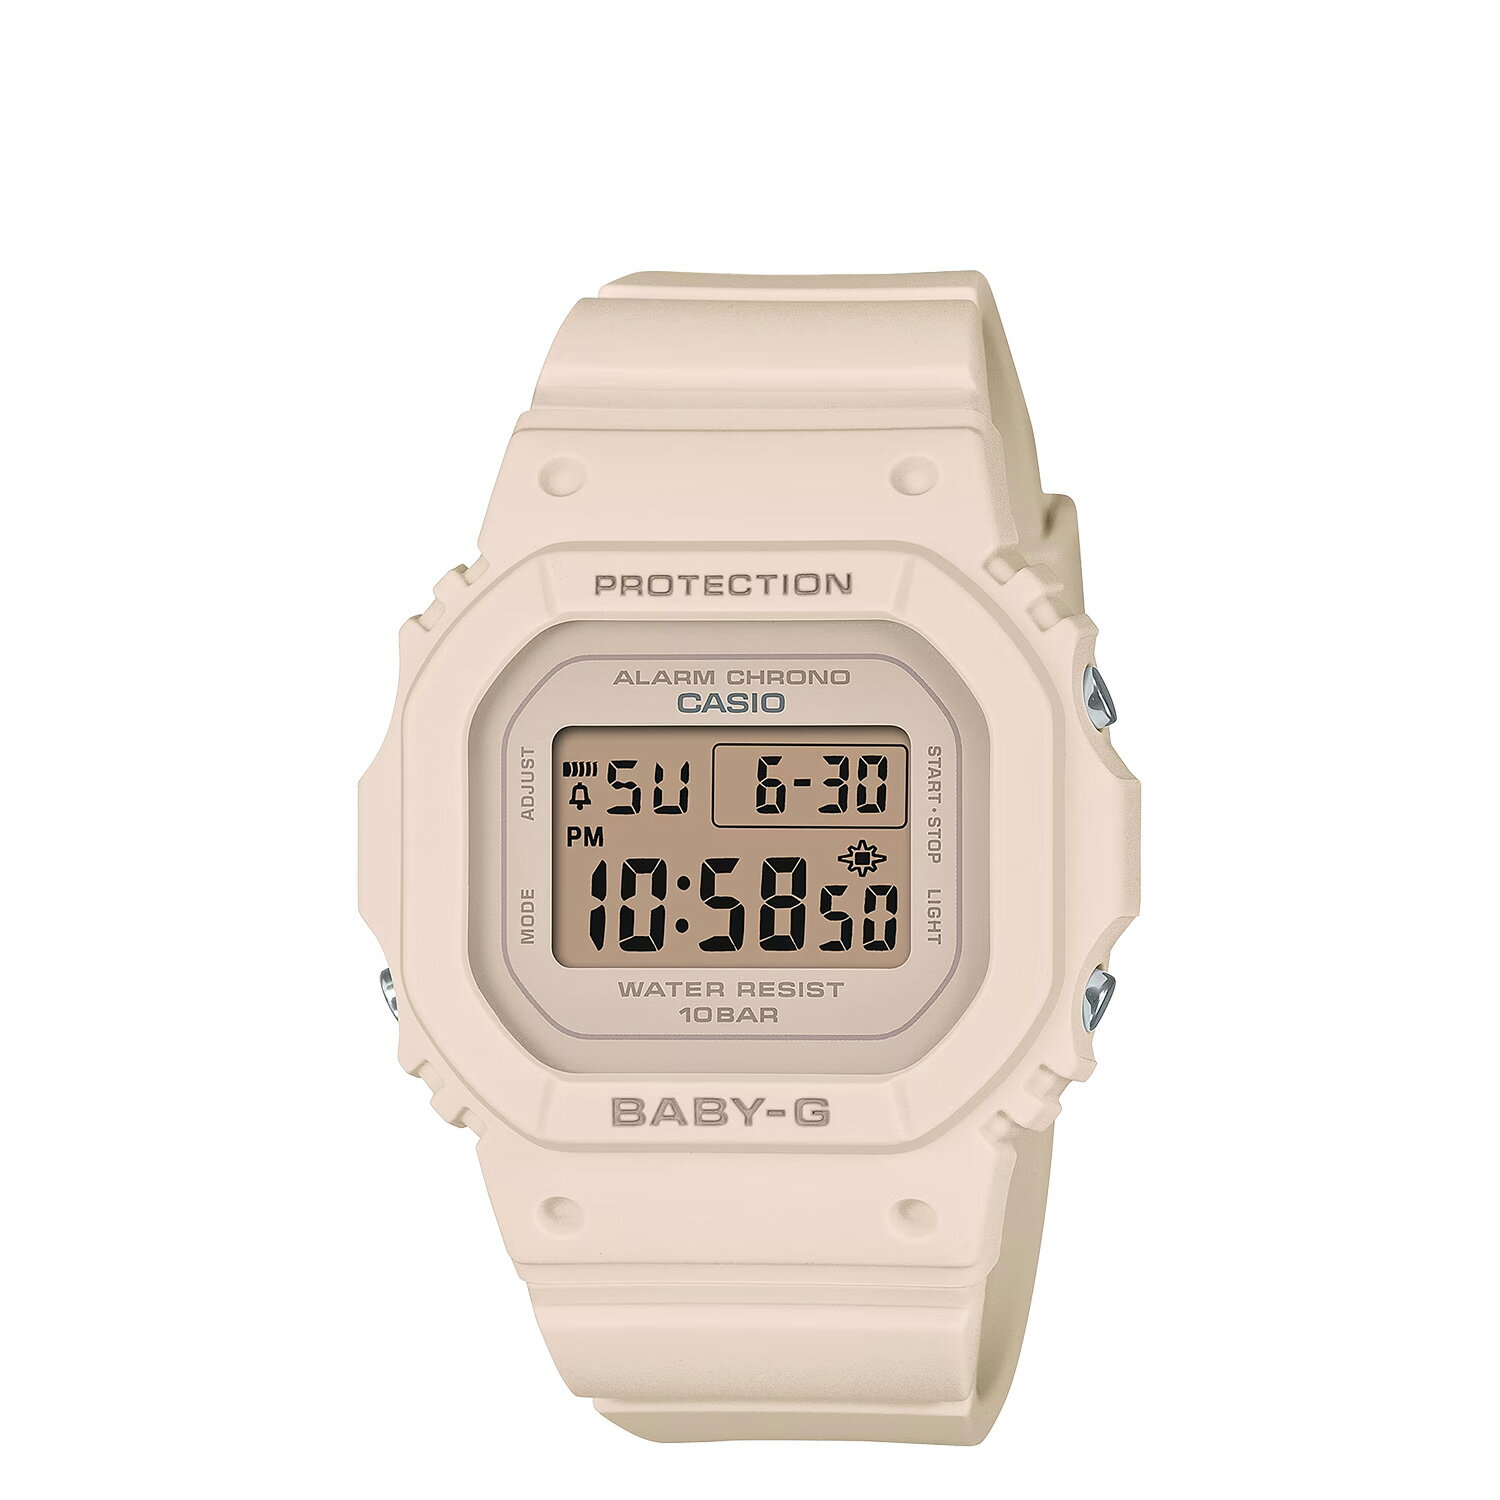 カシオ BABY-G CASIO 腕時計 BGD-565U-4JF 防水 ベビーG ベイビーG レディース ベージュ